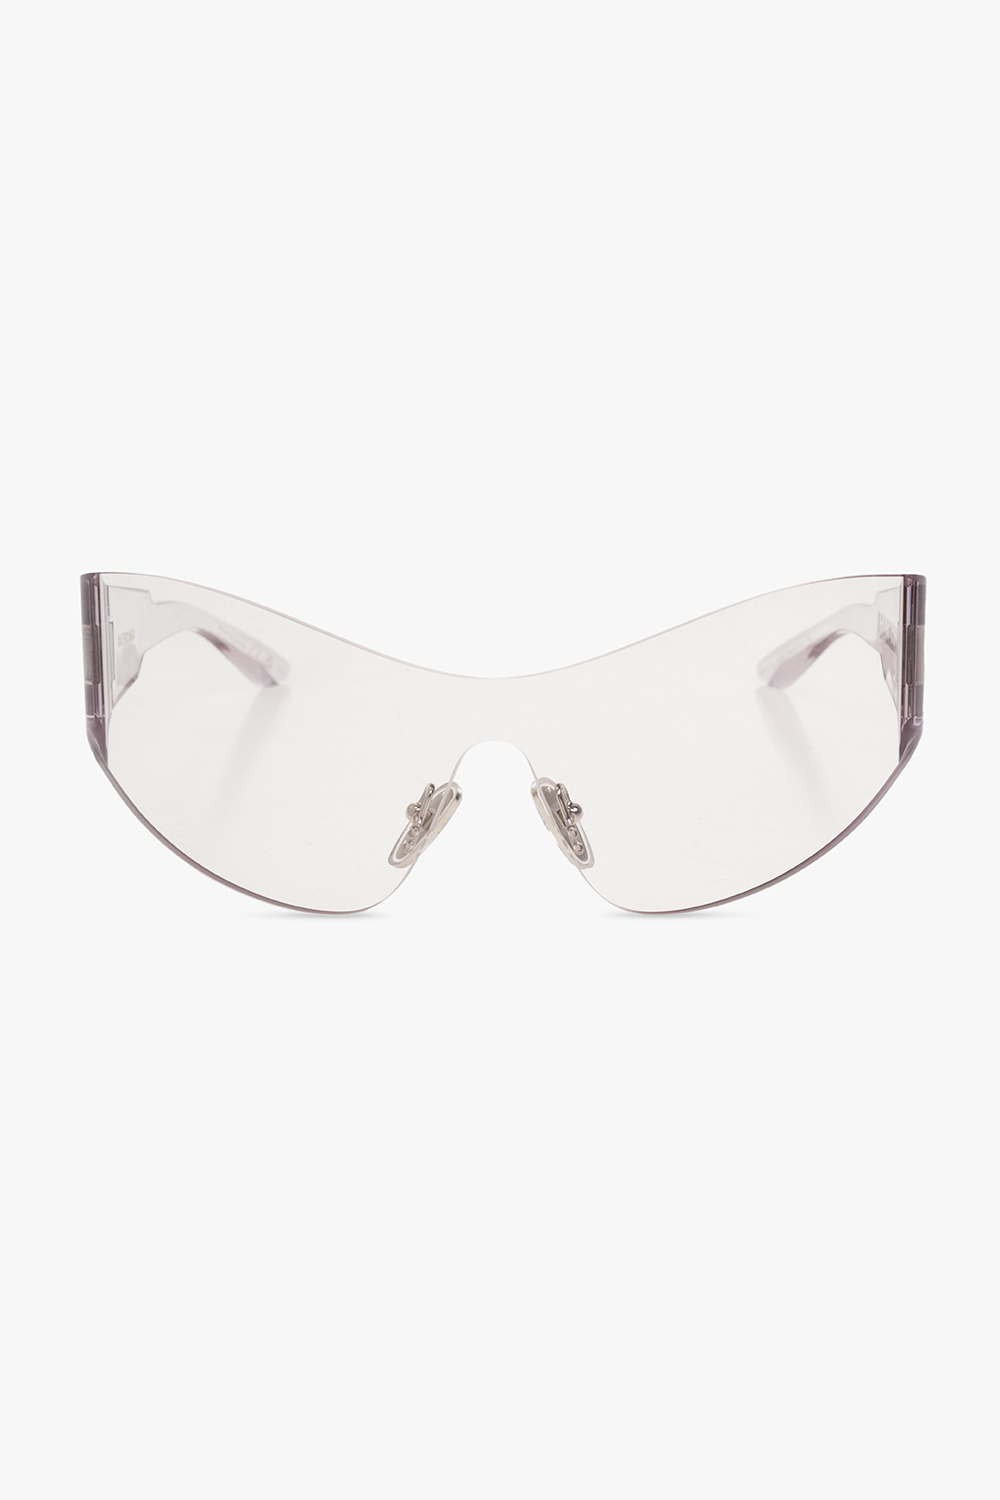 Balenciaga ‘Mono Cat 2.0’ sunglasses